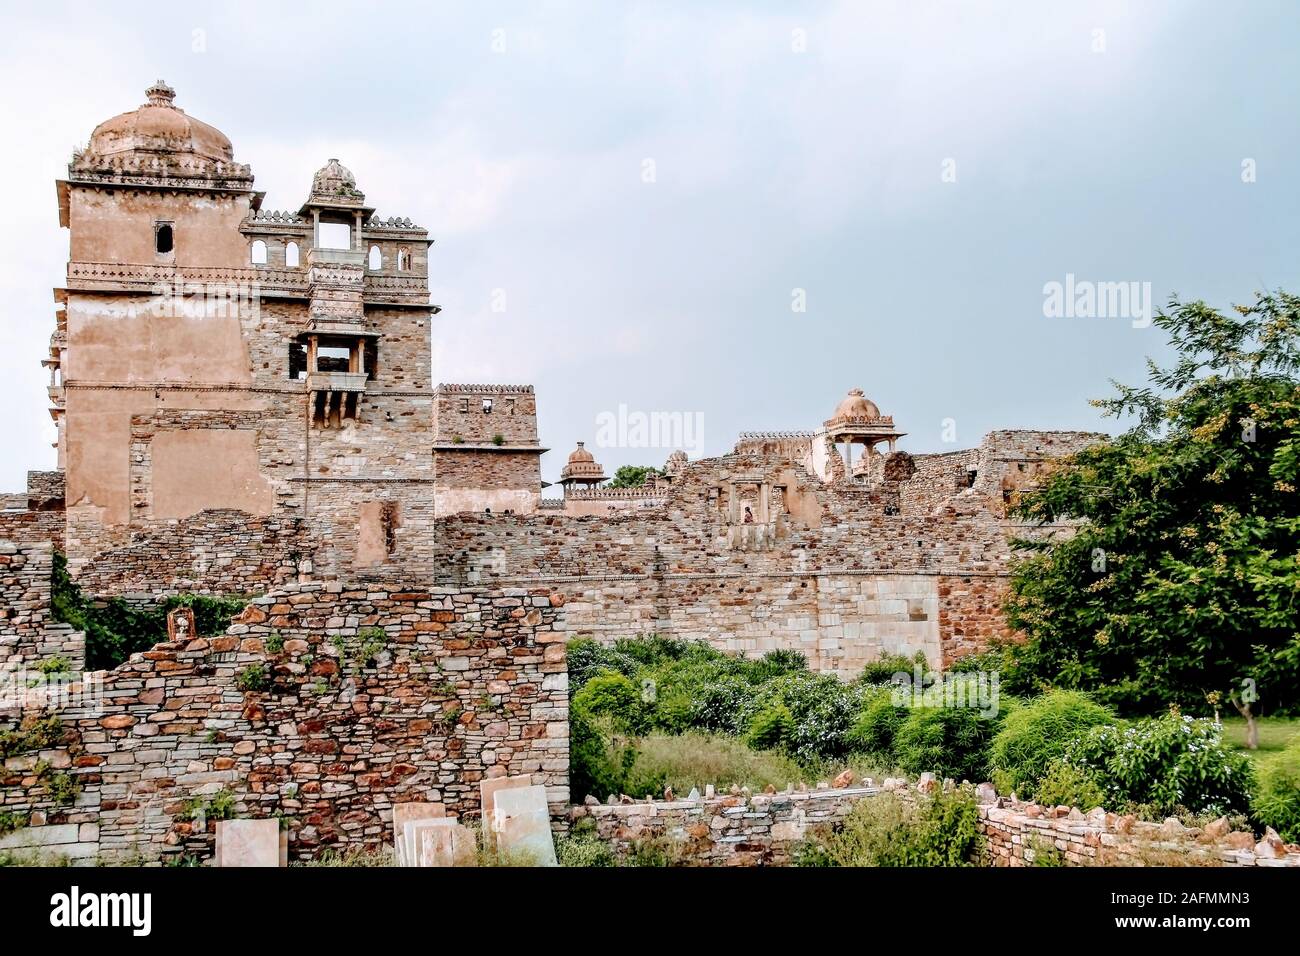 Chittorgarh Fort es una de las mayores fortalezas en la India. Es un sitio del Patrimonio Mundial de la UNESCO.La fortaleza fue la capital de Mewar. Foto de stock